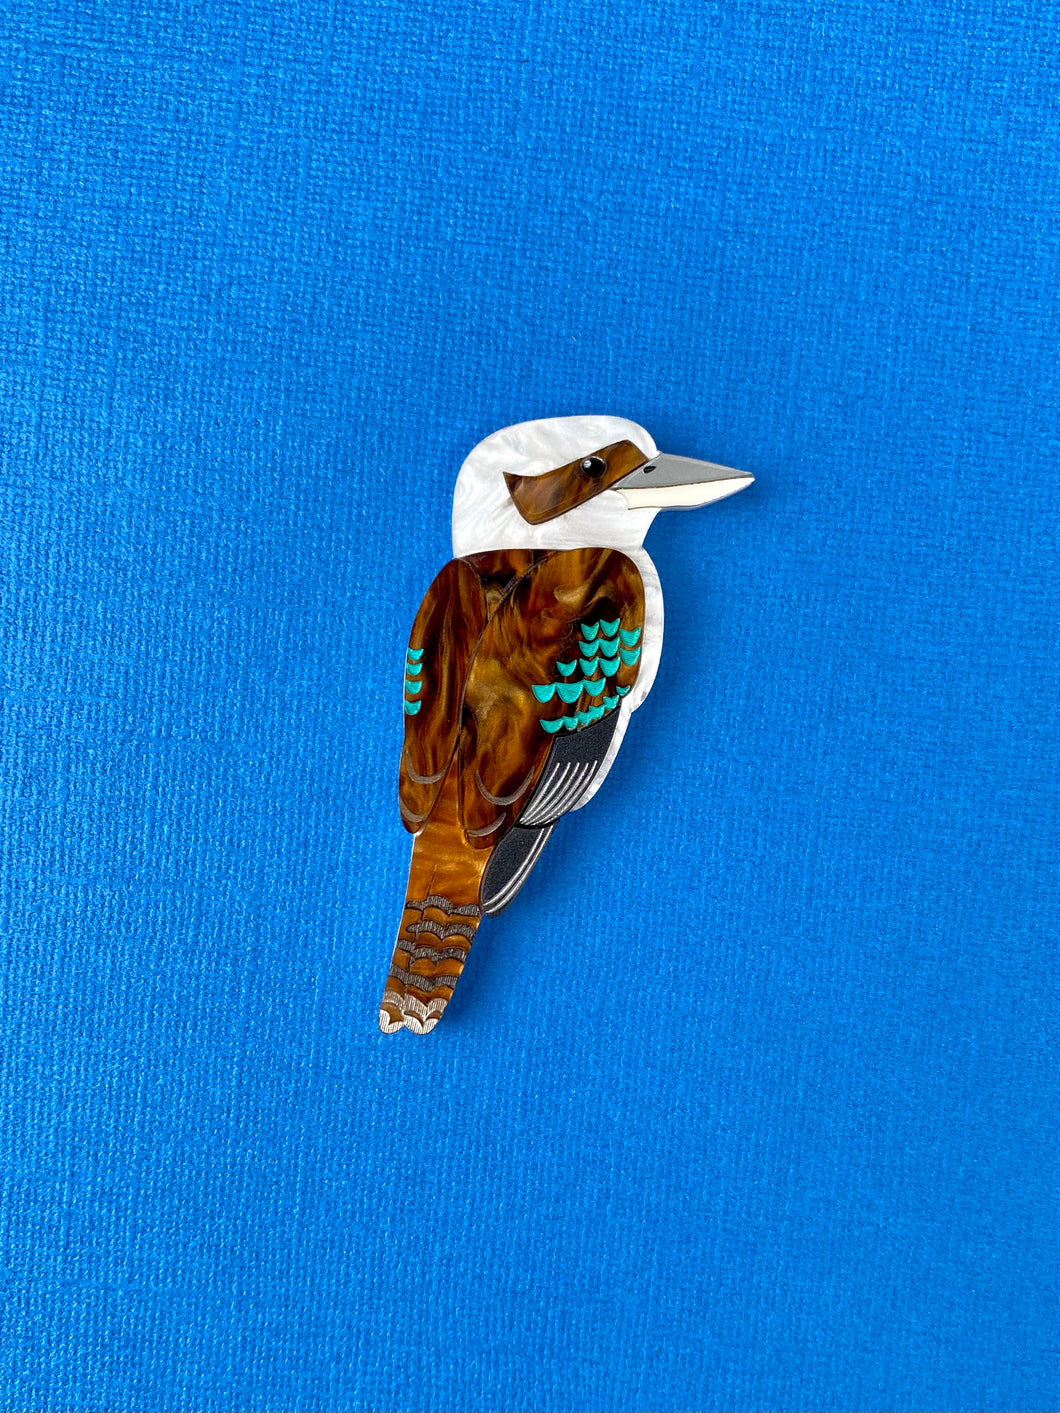 Kookaburra brooch